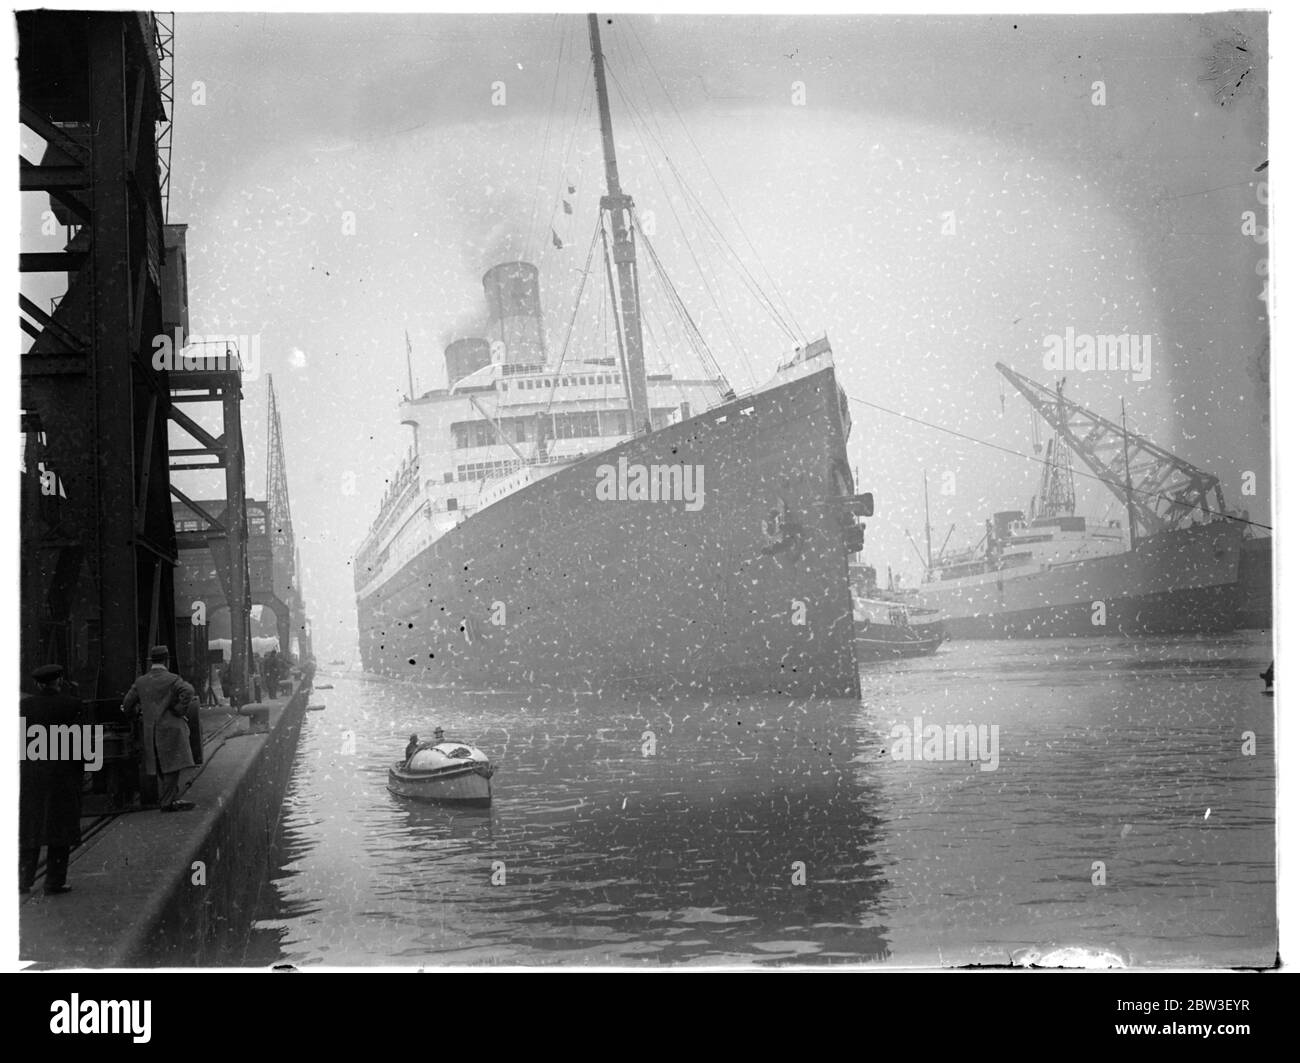 Majestueux arrivant à Southampton , ses jours numérotés après un renversement dans une décision dans laquelle elle prendra maintenant la place de la Berengaria d'être retirée par la Cunard White Star Line dans 2 mois. 12 décembre 1935 Banque D'Images